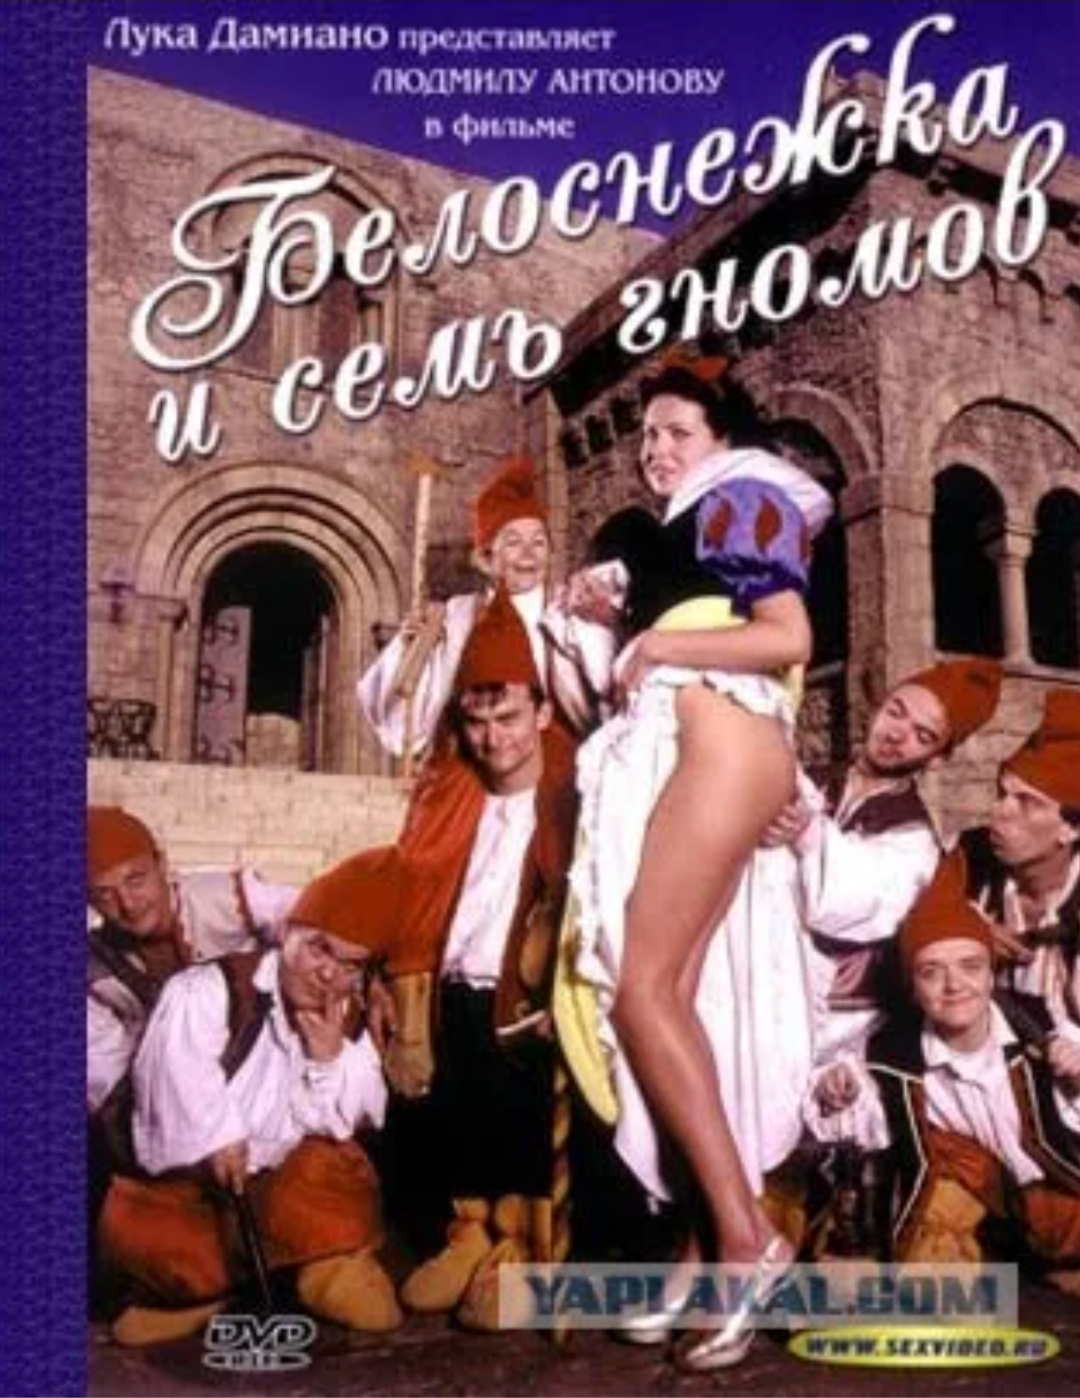 порно белоснежка и 7 гномов на русском онлайн бесплатно фото 99